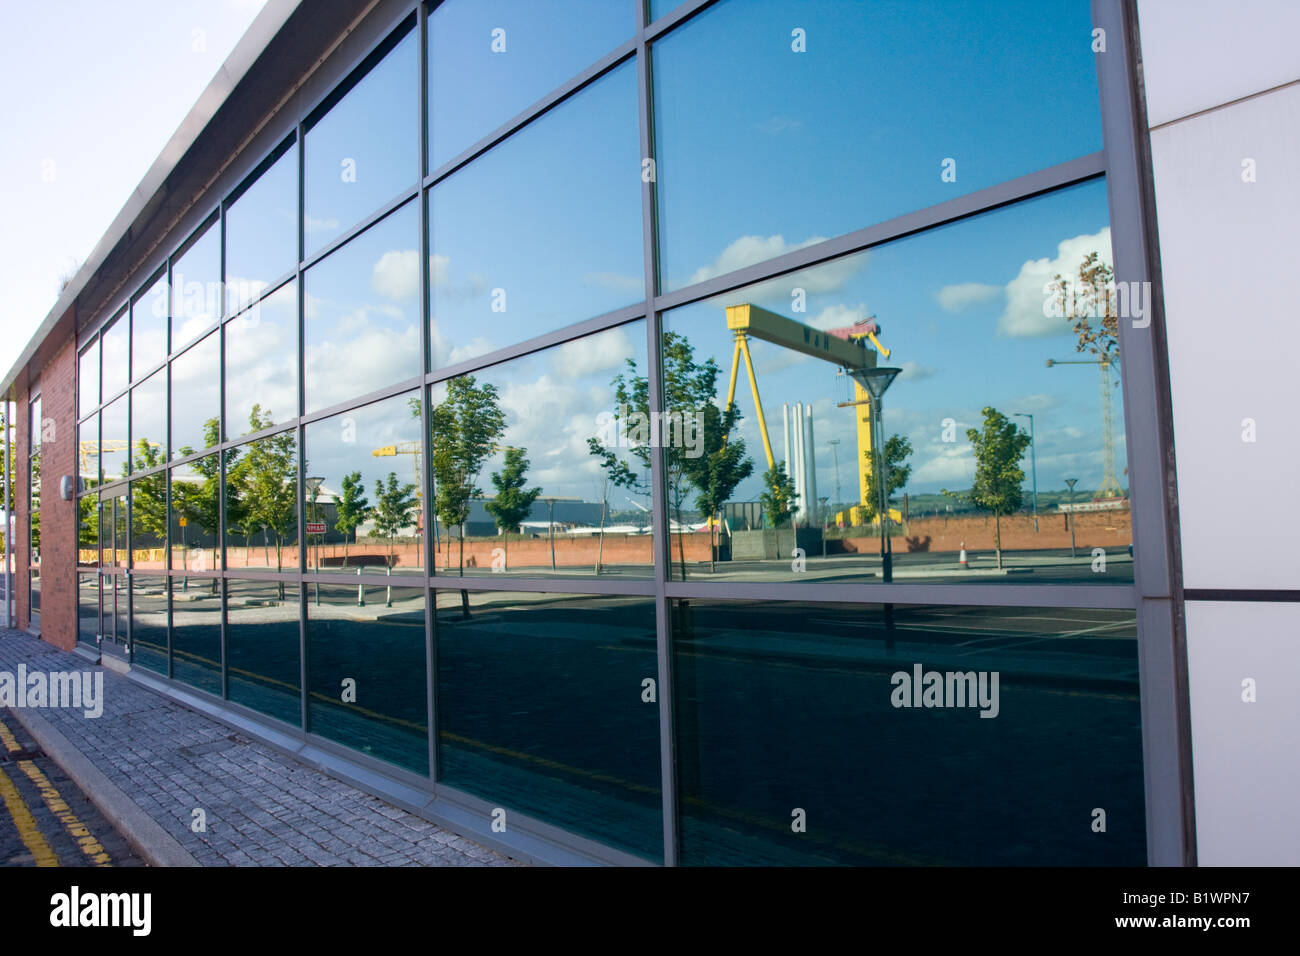 Reflet de la grue du chantier naval Harland and Wolff dans office windows Banque D'Images